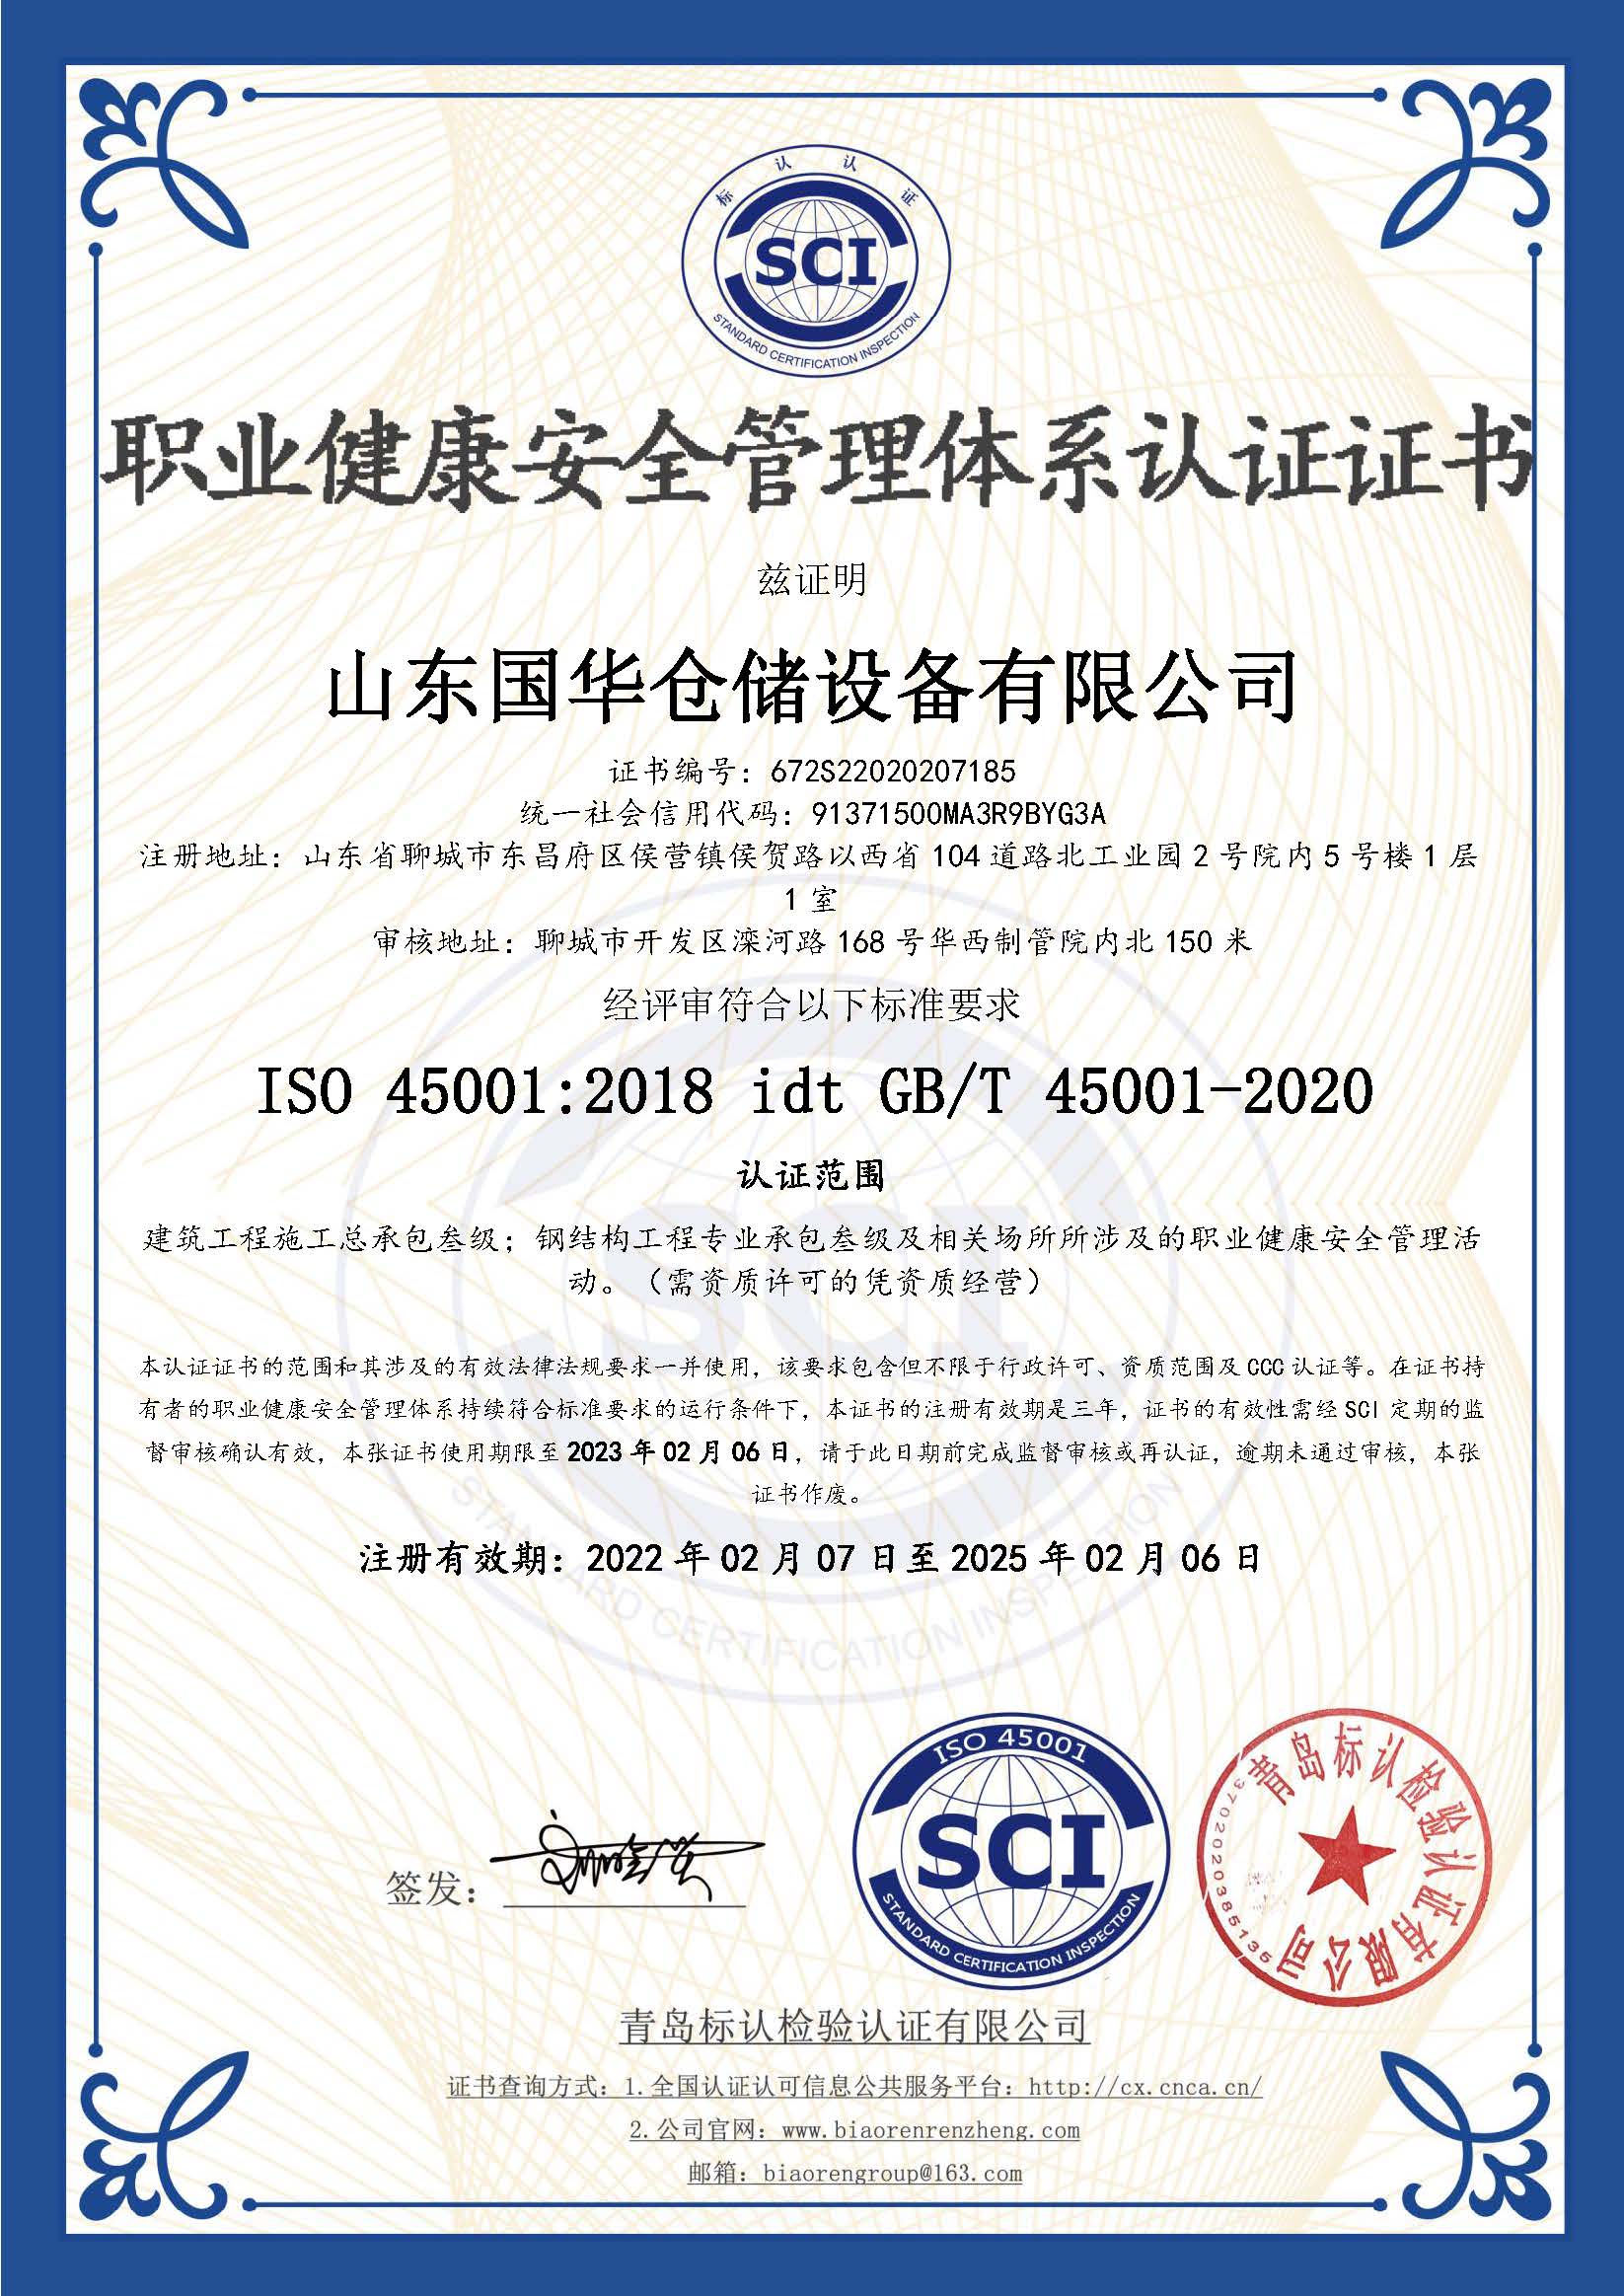 沈阳钢板仓职业健康安全管理体系认证证书